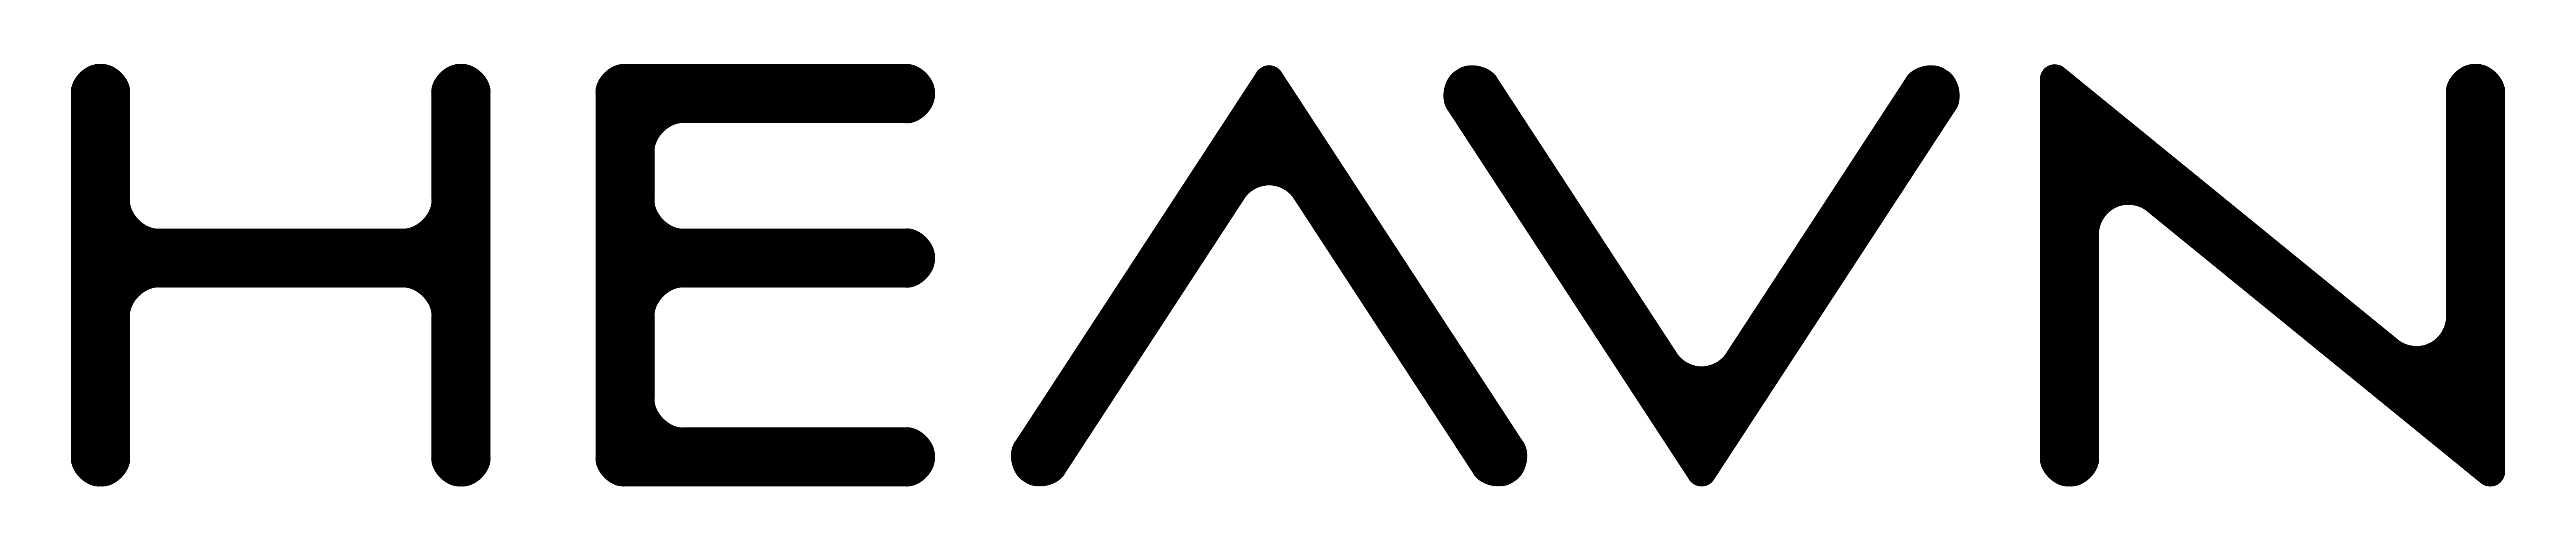 Logo HEAVN schwarz